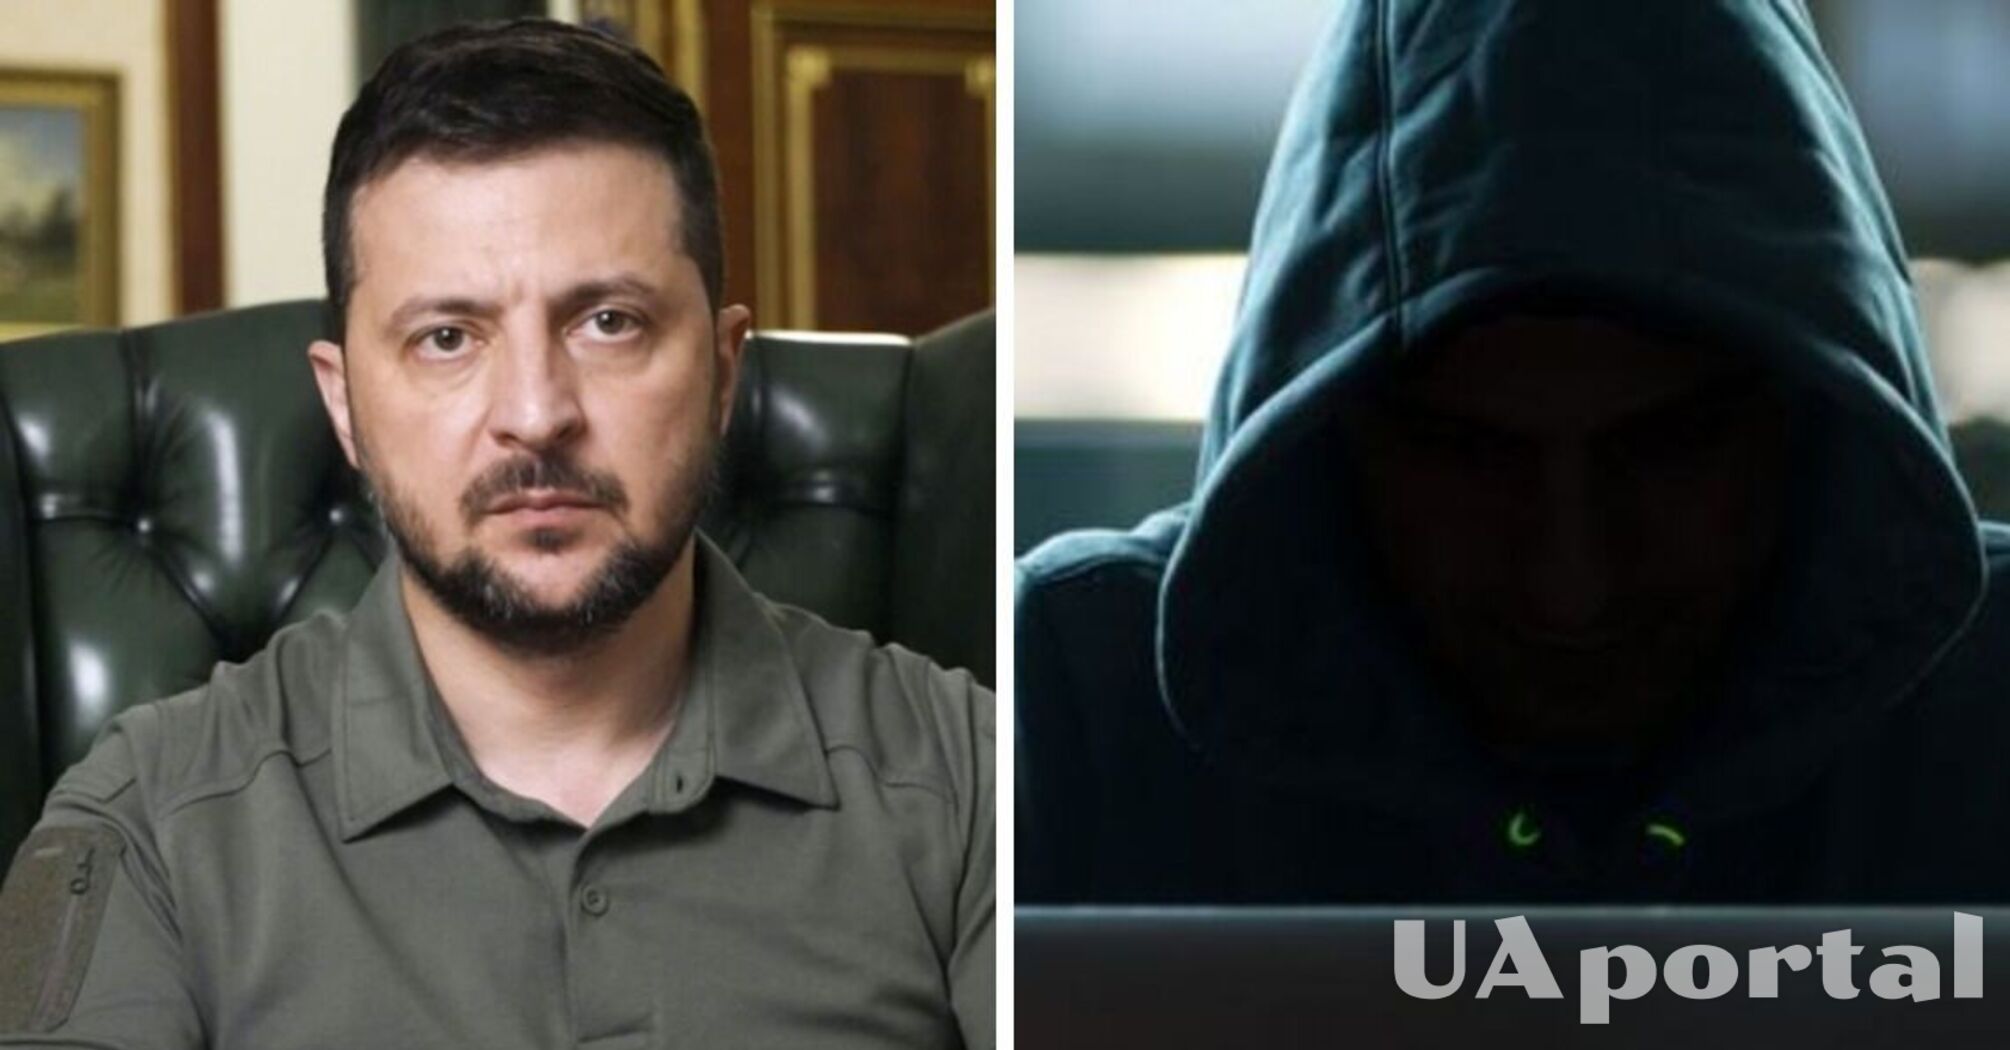 'Люди розуміють, що їх просто кинули': хакери показали виступ Зеленського на кримському 'ТВ' (відео)